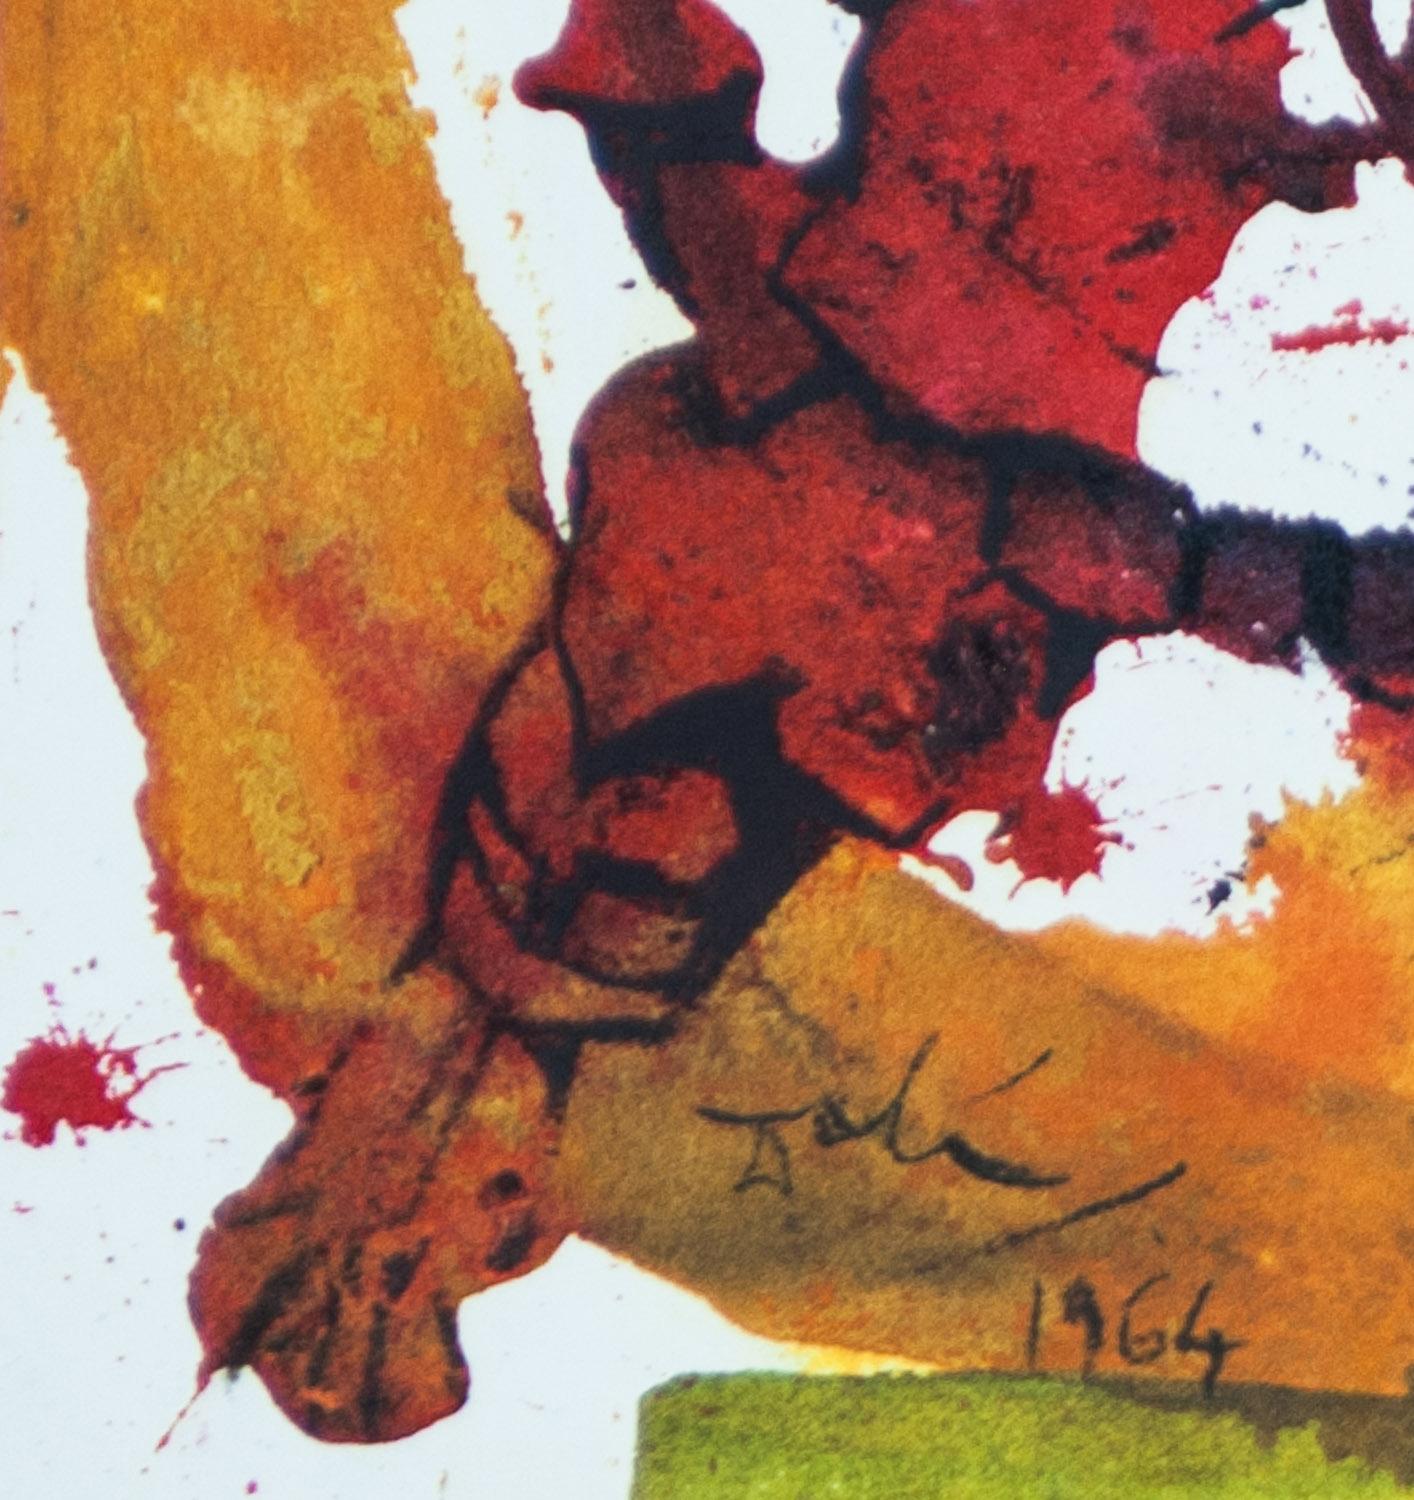 The Chosen Vineyard,  Biblia Sacra Salvador Dali Lithograph 1964 - Print by Salvador Dalí